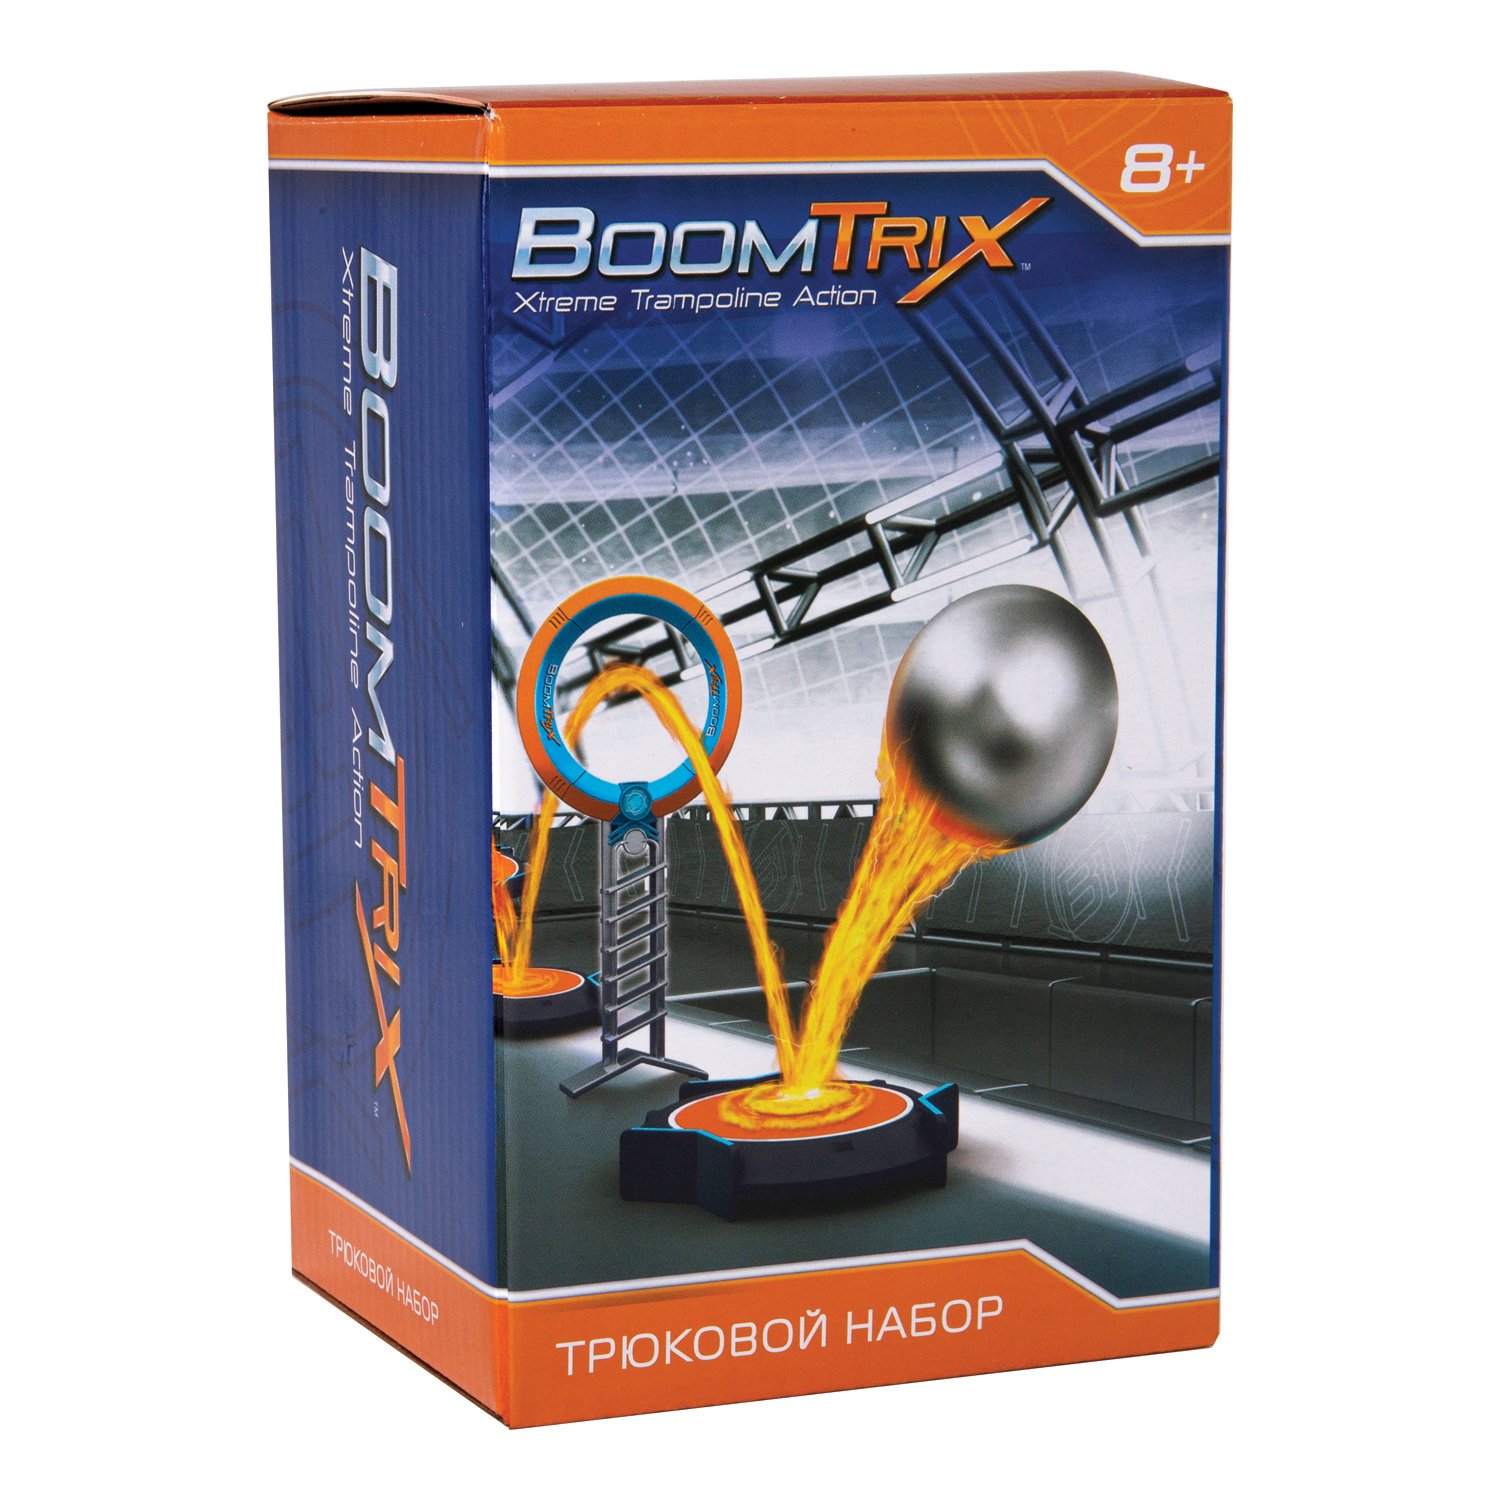 Трюковой набор Boomtrix 80643 цена и фото